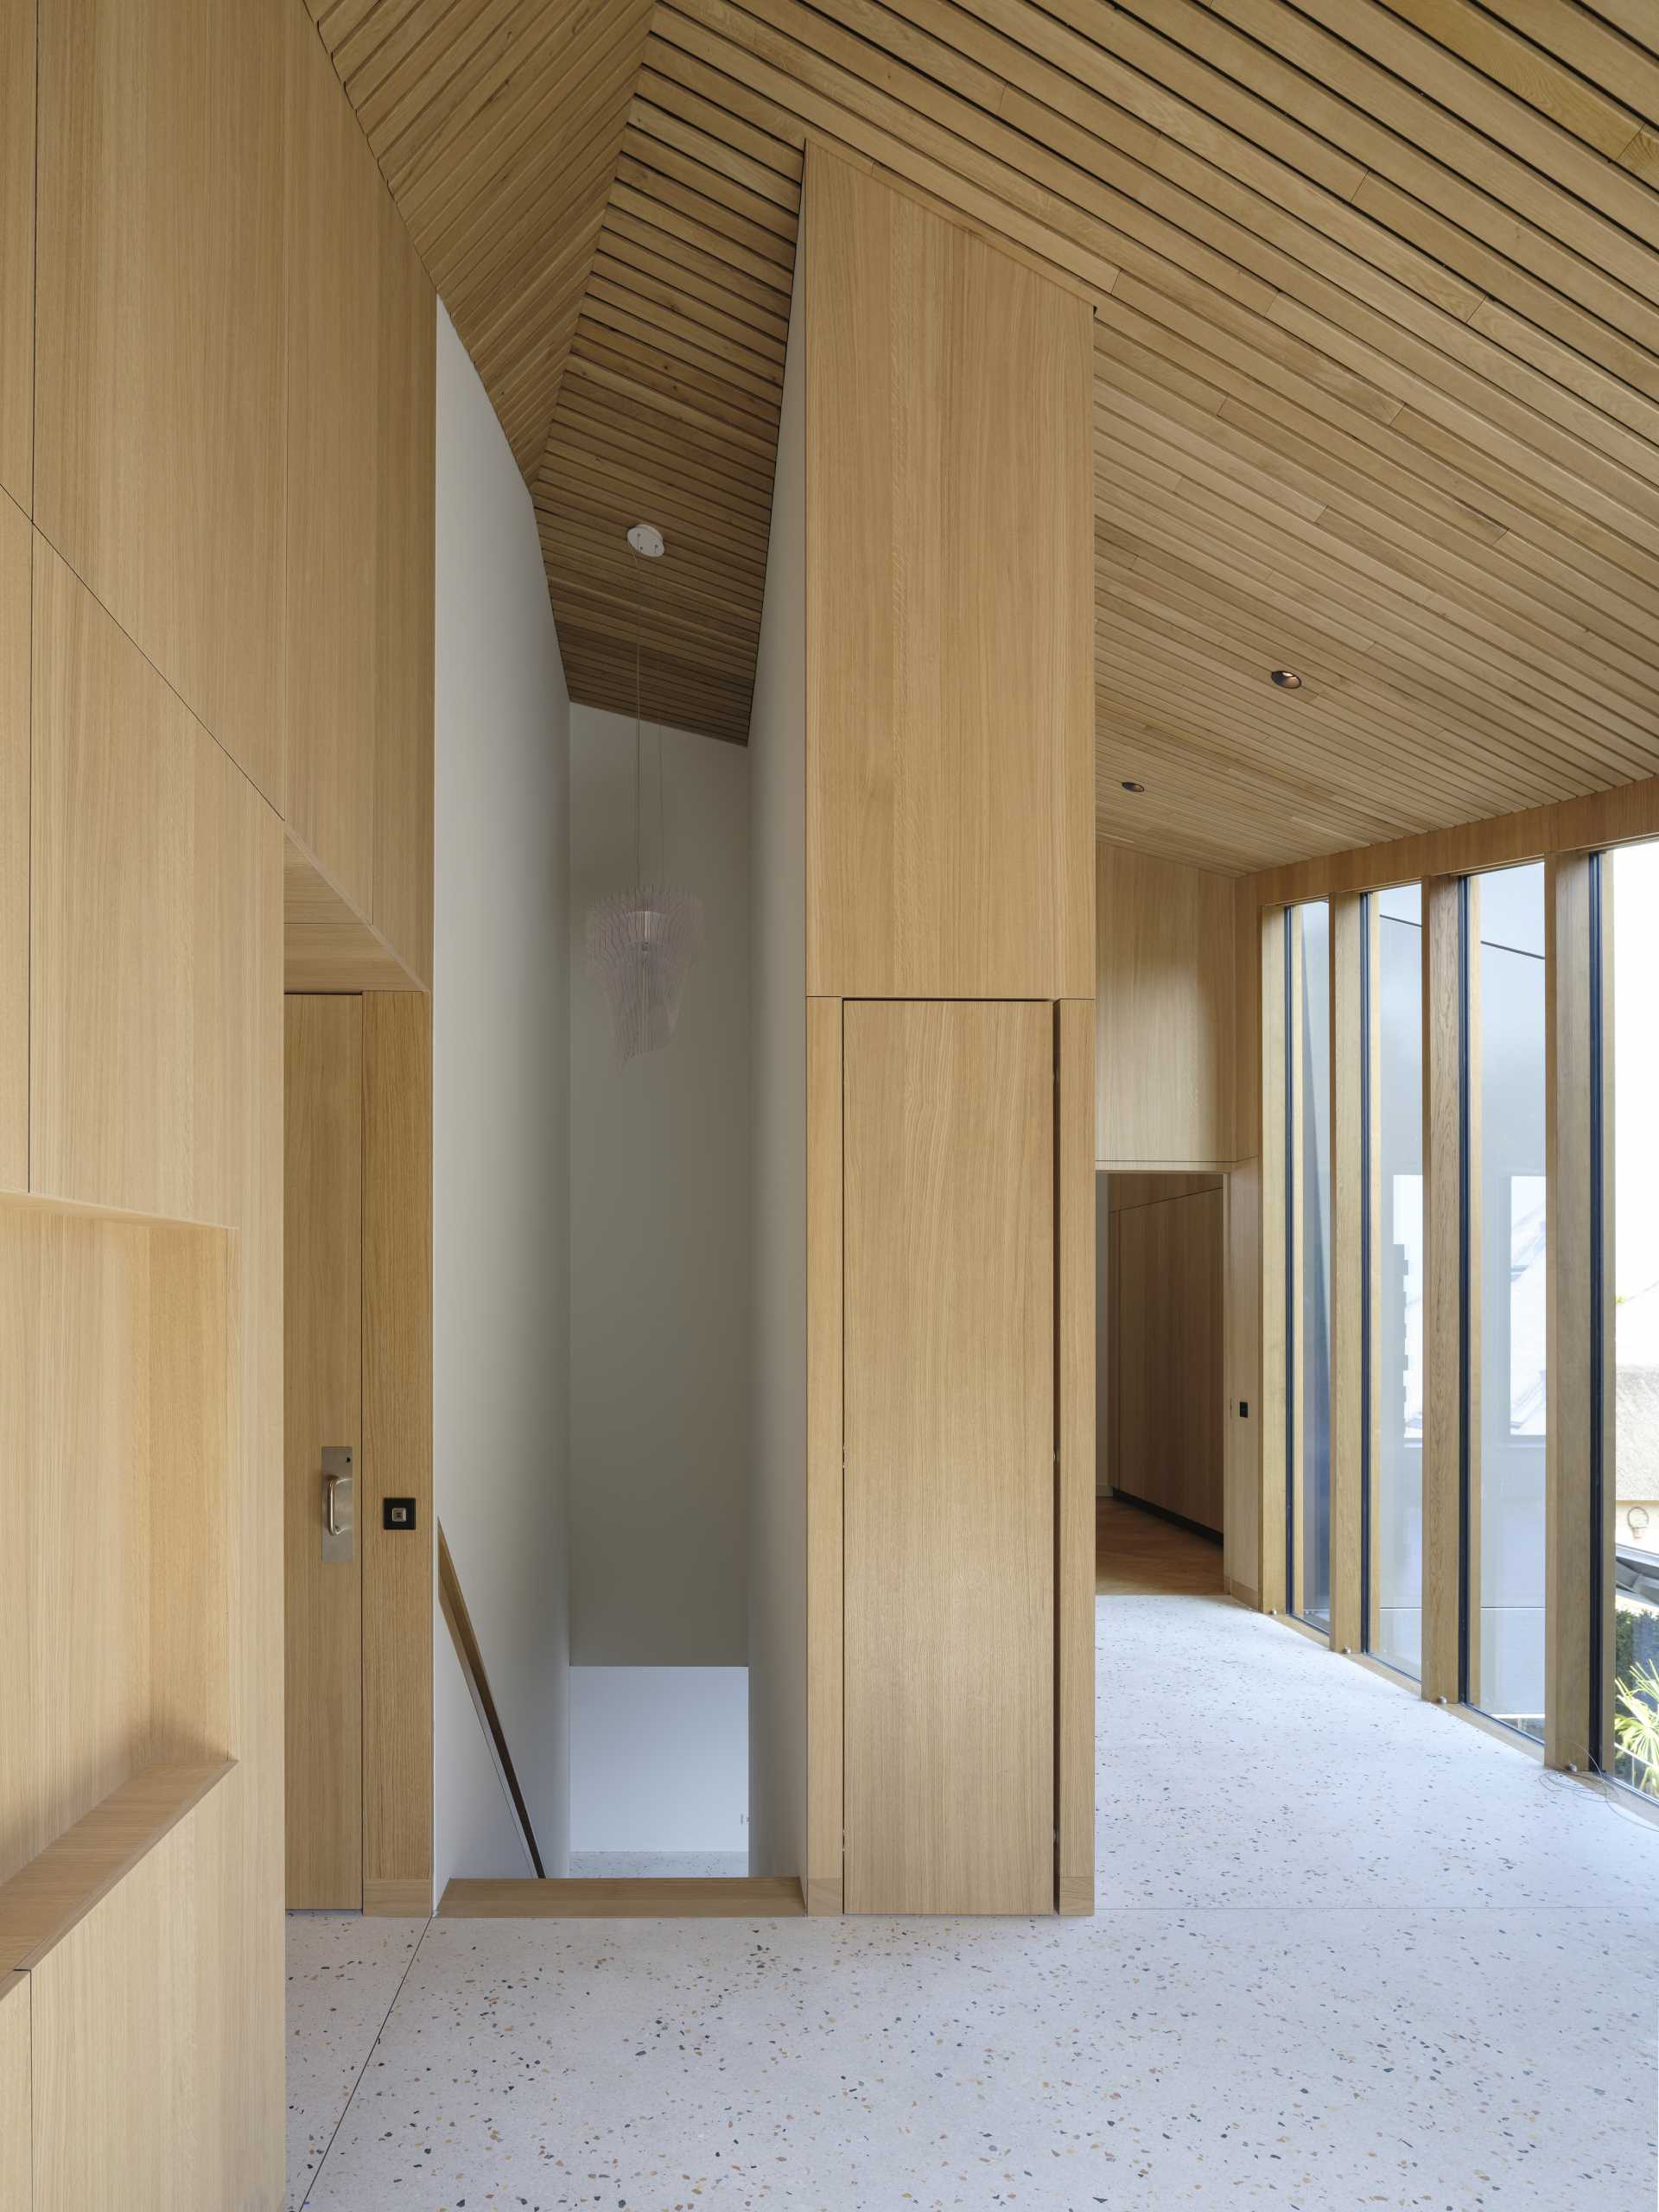 خانه ای مدرن با فضای داخلی چوبی.